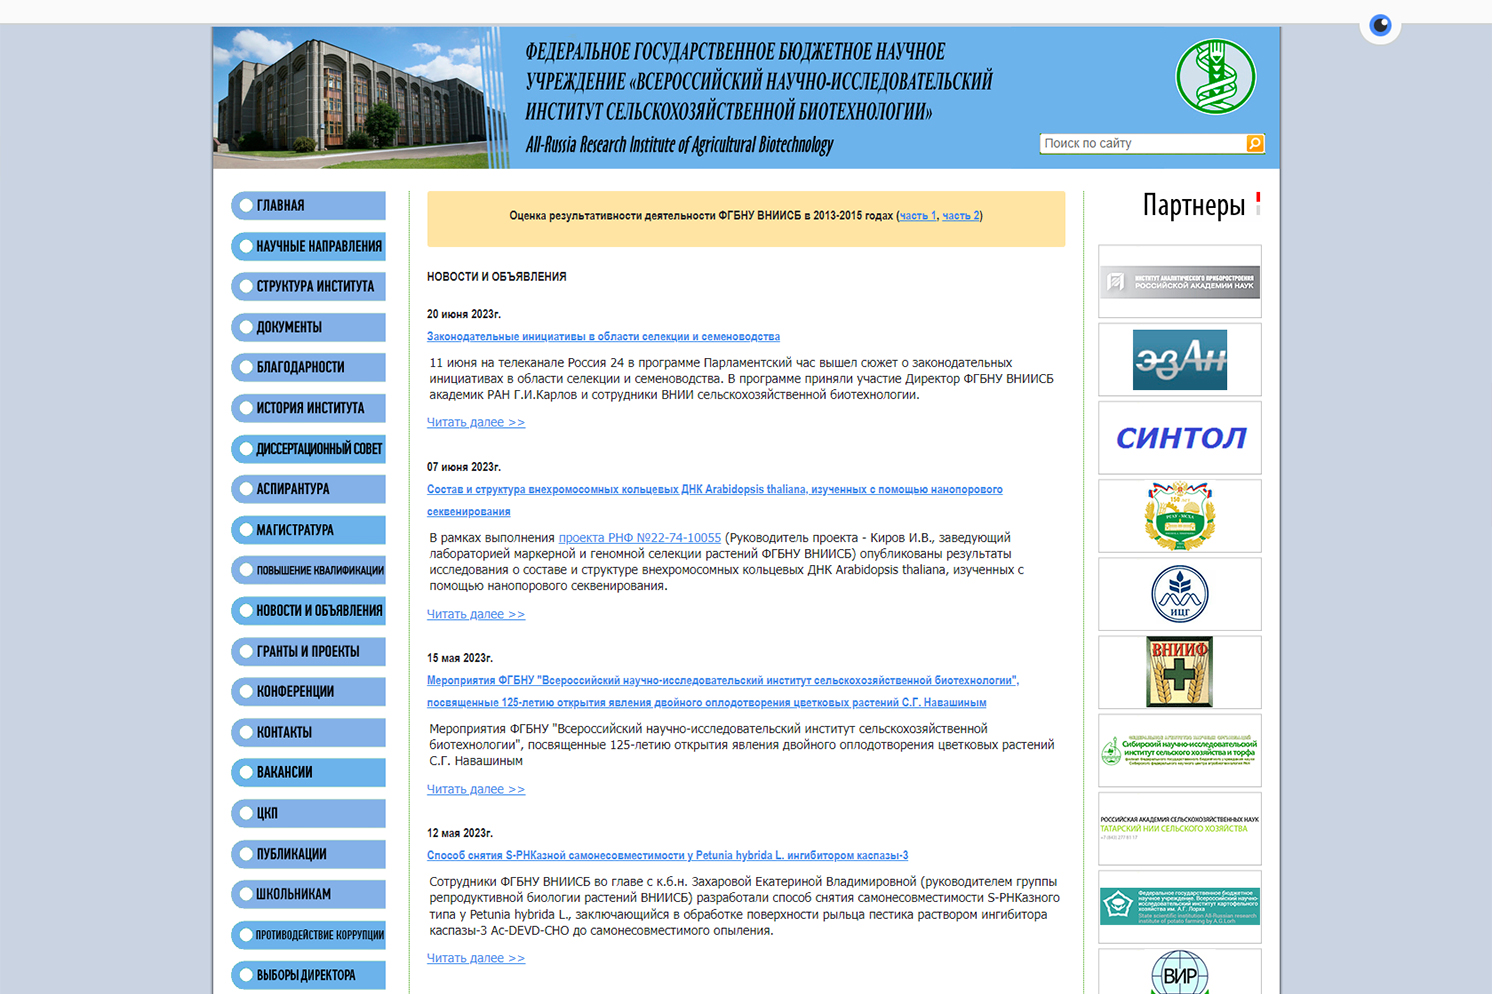 Всероссийский научно-исследовательский институт сельскохозяйственной биотехнологии ВНИИСБ